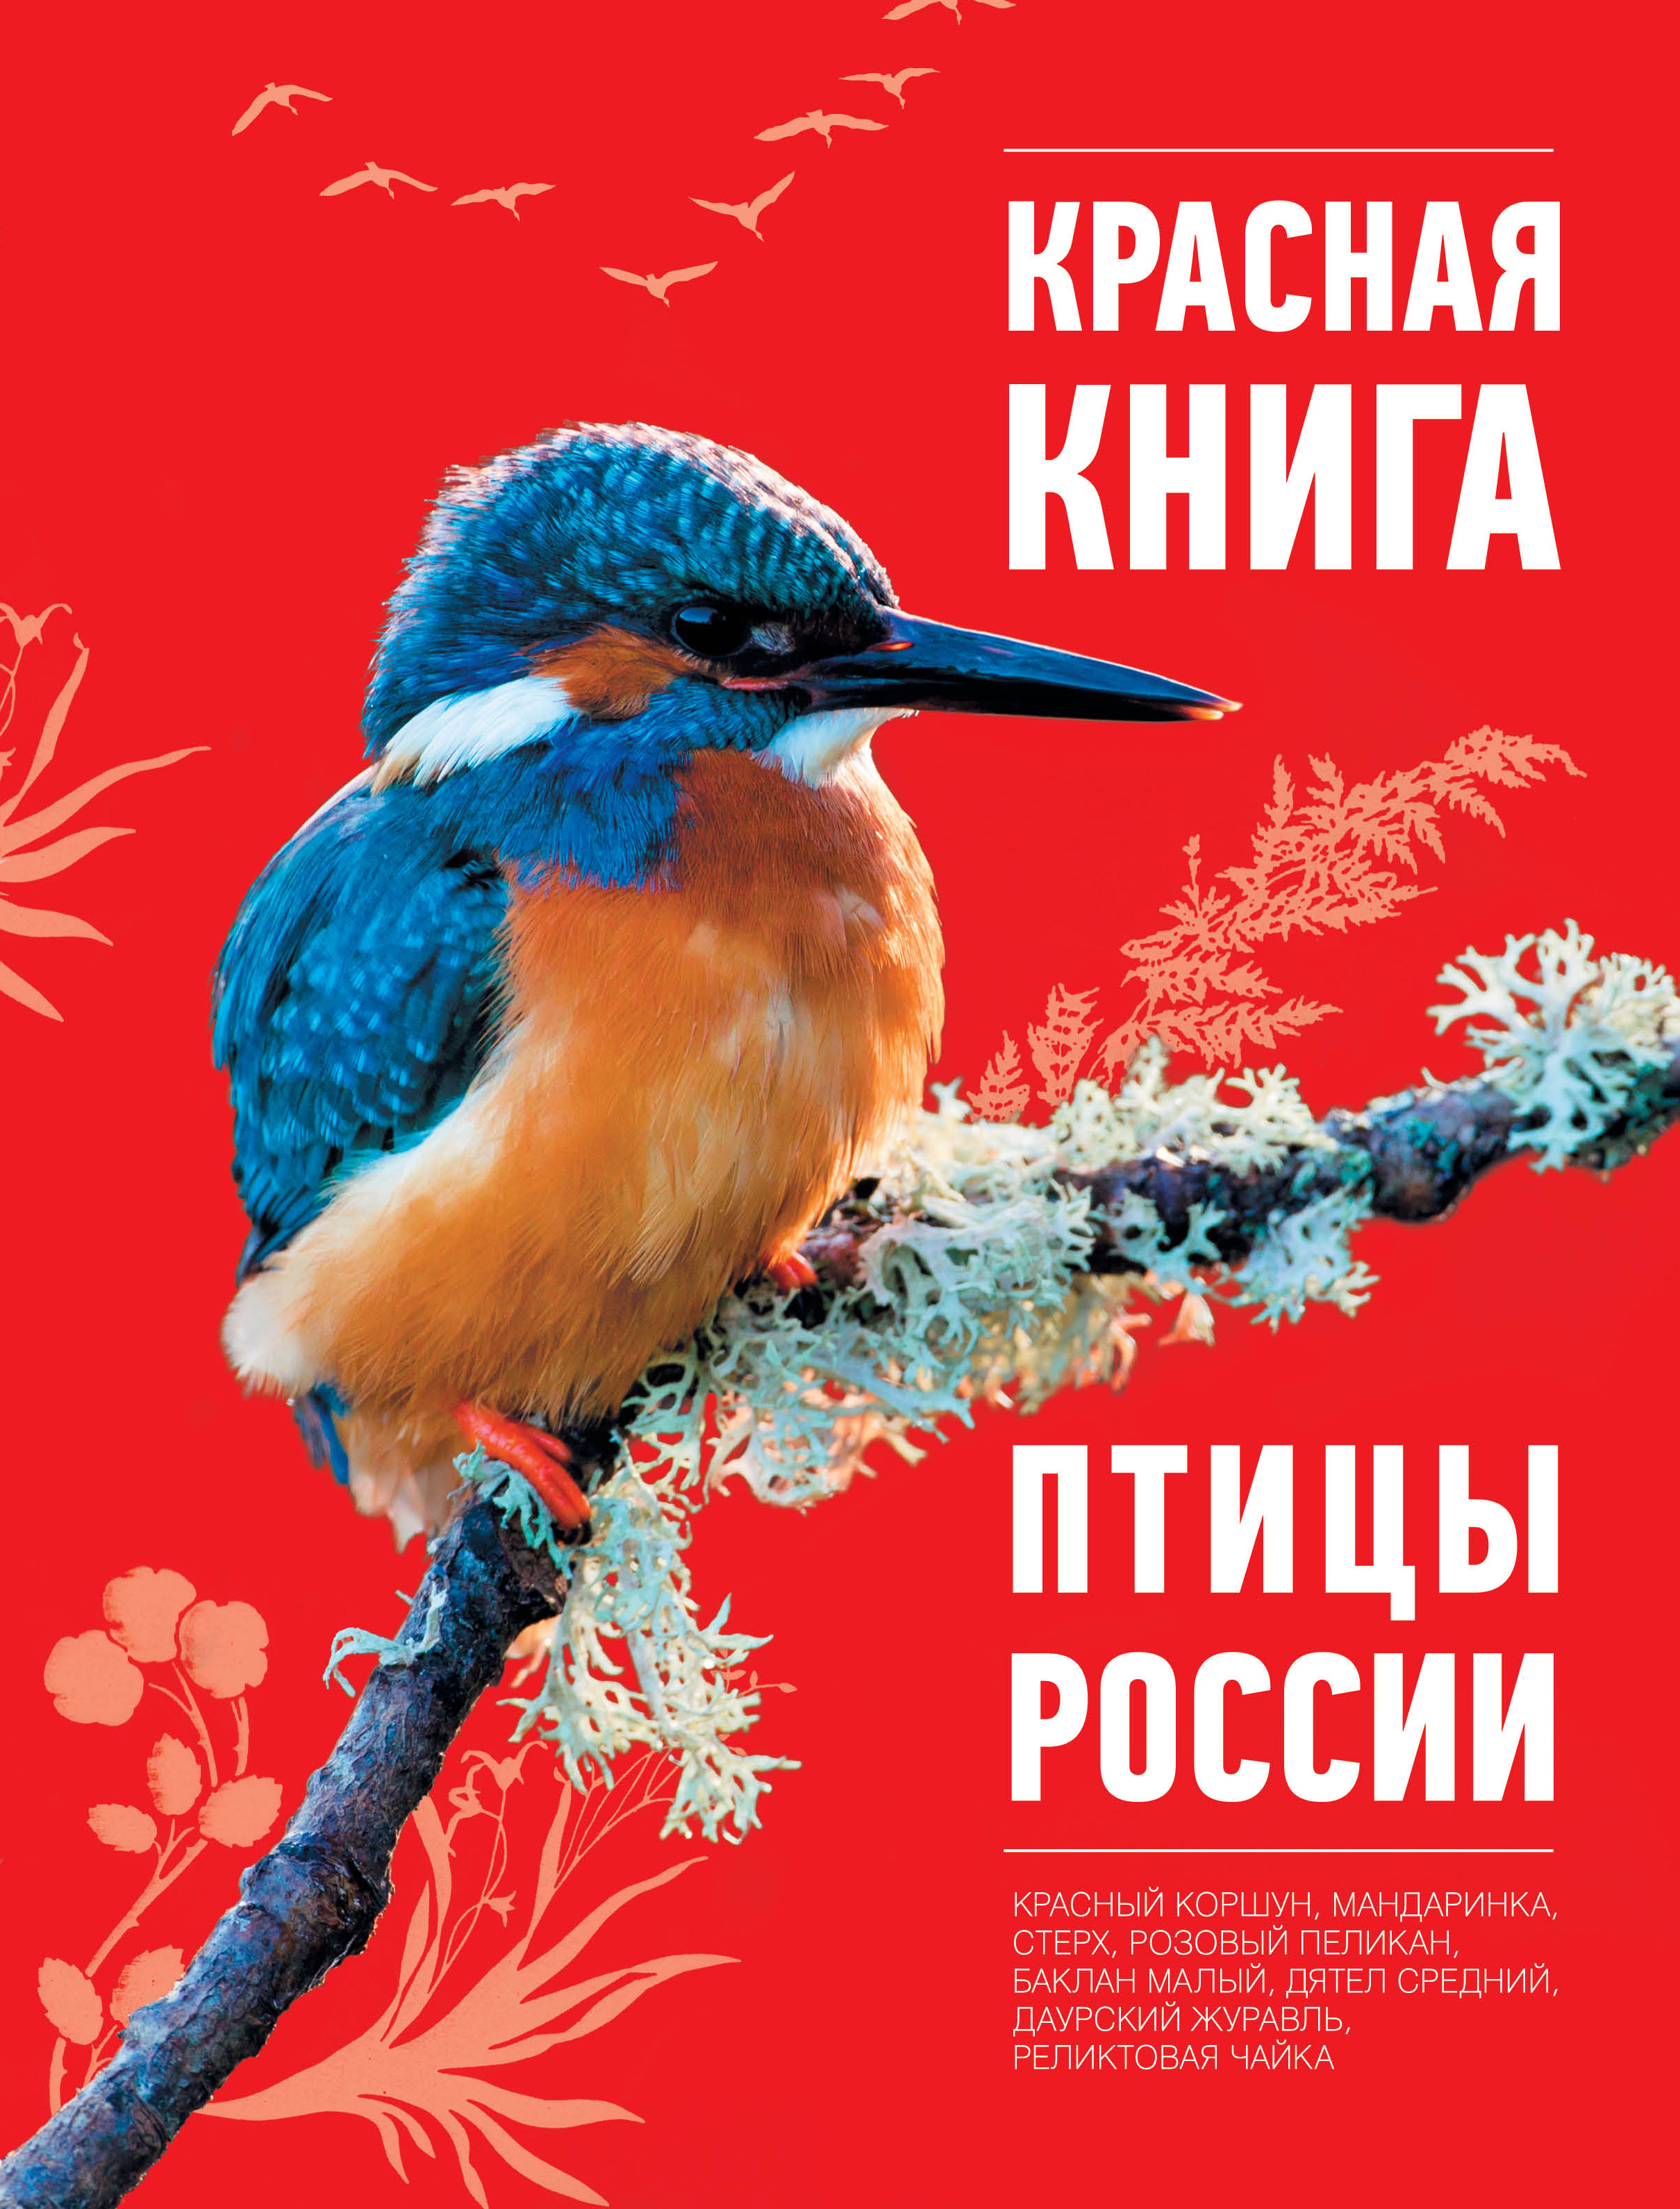 Красная книга список птиц. Птицы красной книги. Птицы красной книги России.